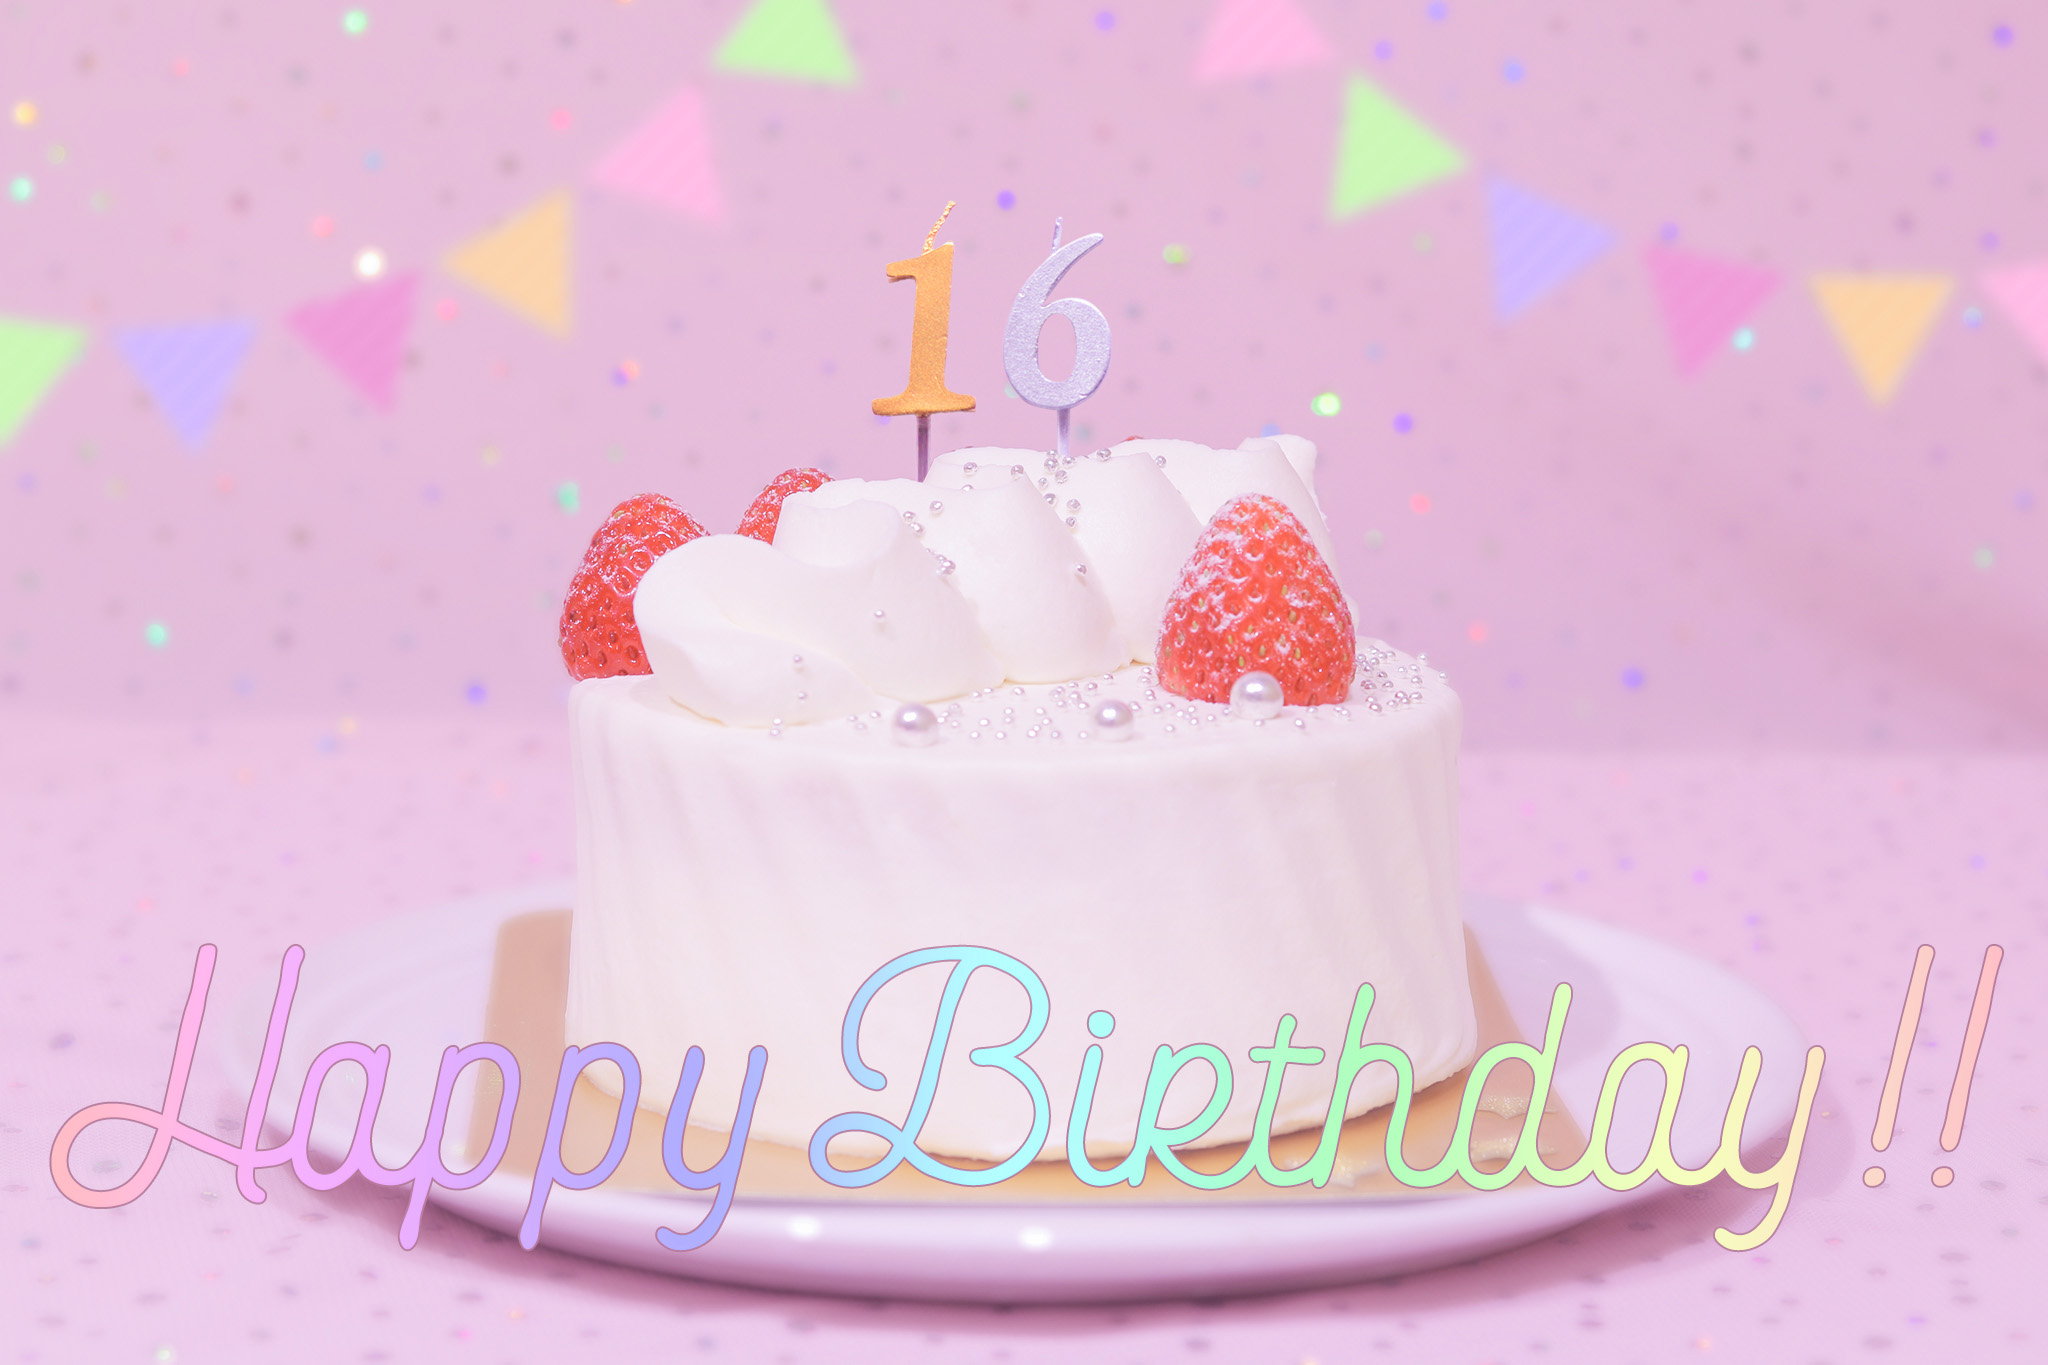 かわいい誕生日画像 ケーキとパステルカラーで可愛くお祝い 16歳編 のフリー画像 おしゃれなフリー写真素材 Girly Drop